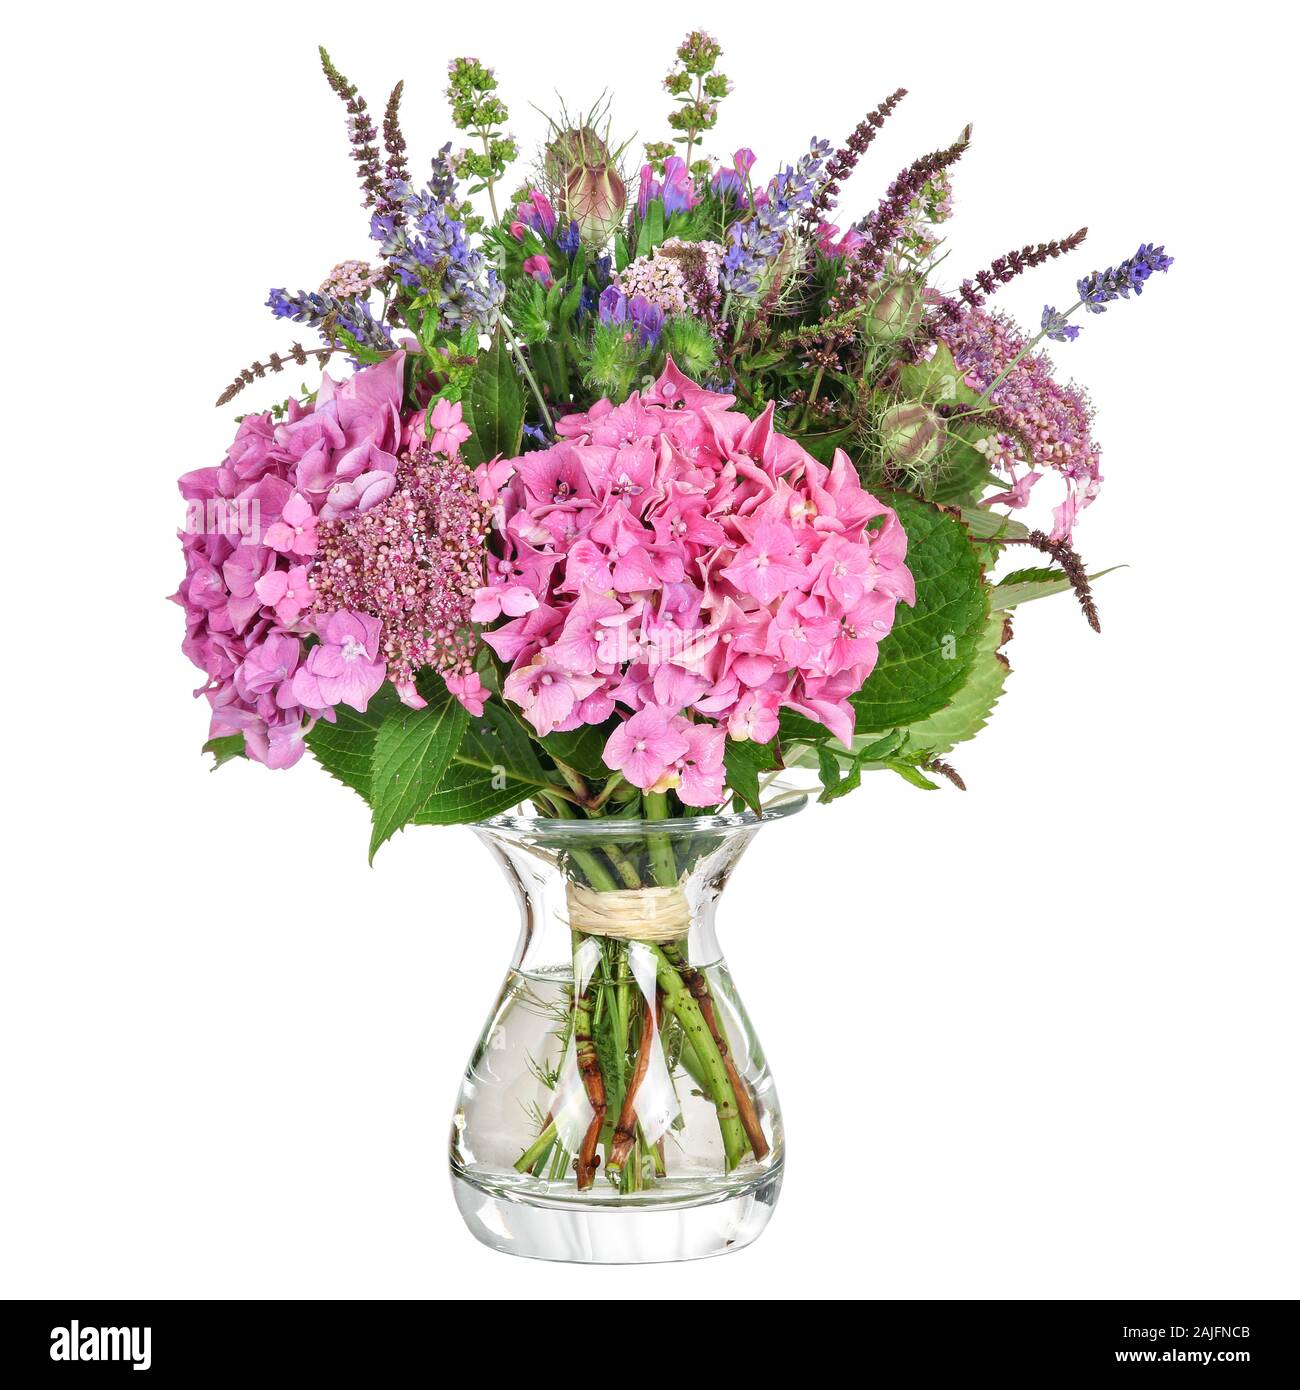 Mazzo di fiori con ortensie e erbe aromatiche Foto Stock